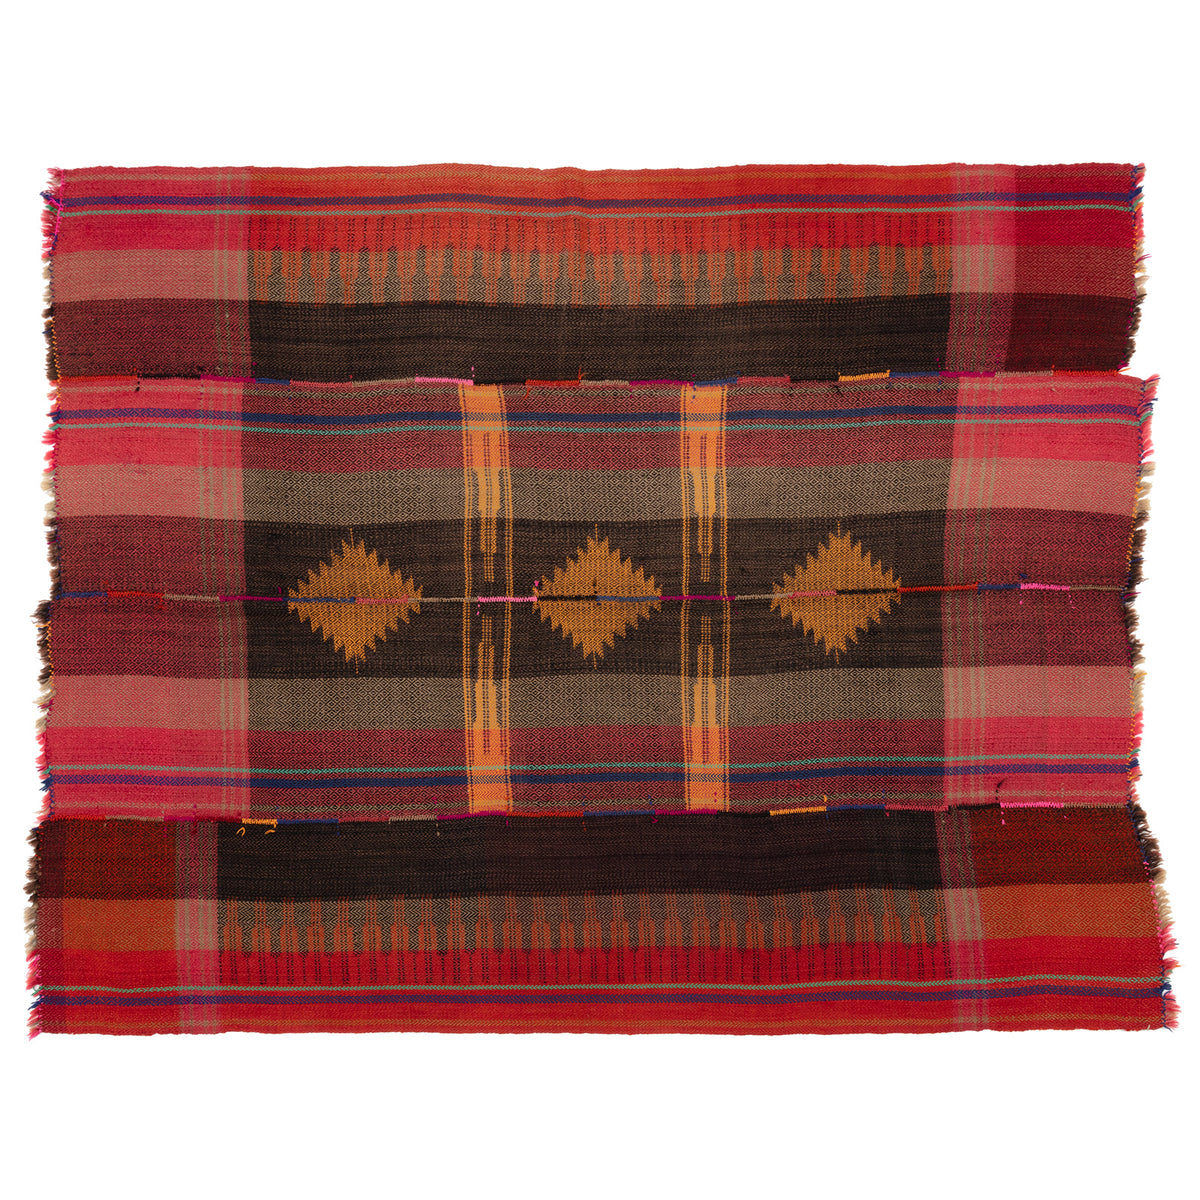 Vintage blanket no. K645, size 224 x 180 cm from Urfa in Turkey